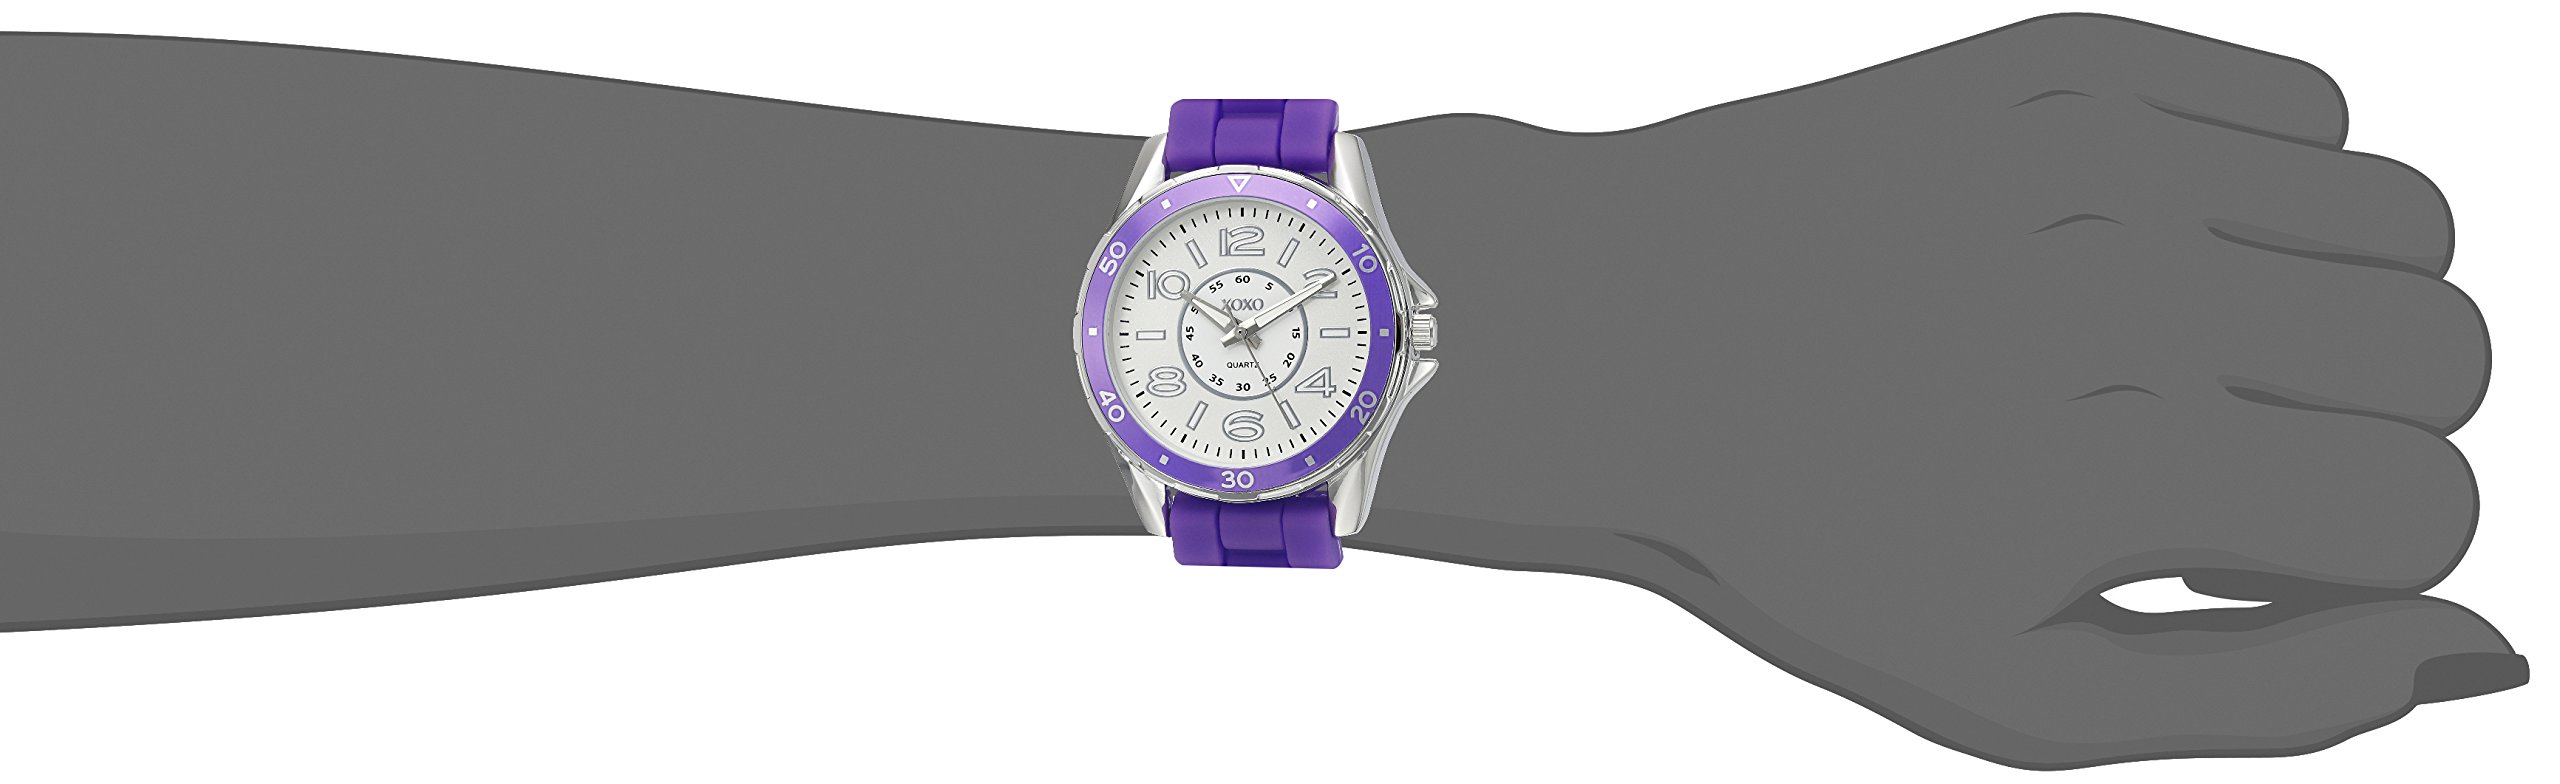 XOXO Women's Quartz Purple Casual Watch (Model: XO8084)